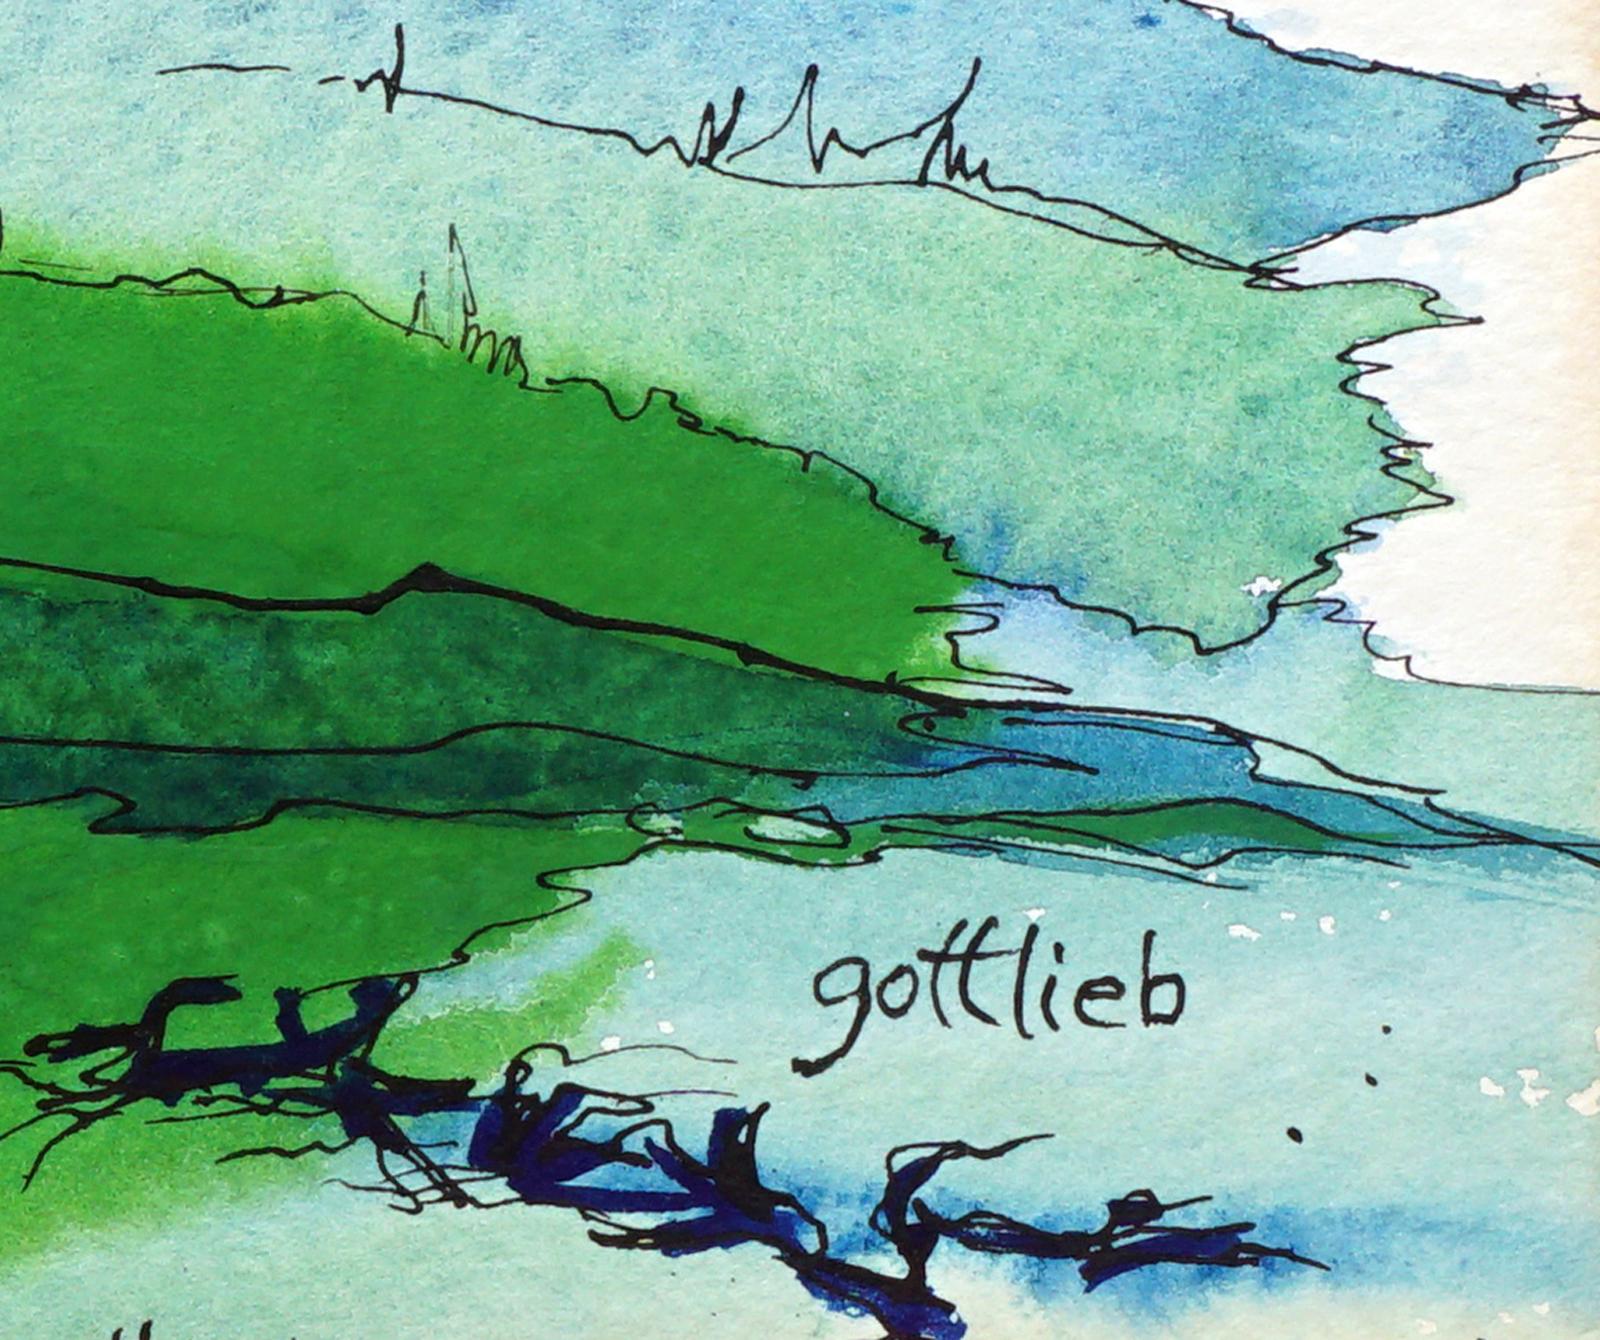 Dramatische abstrakte expressionistische Landschaft mit leuchtenden Grün- und Blautönen wie Federn von unbekanntem Künstler Gottlieb (Amerikaner, 20. Jahrhundert) um 1965. Signiert 